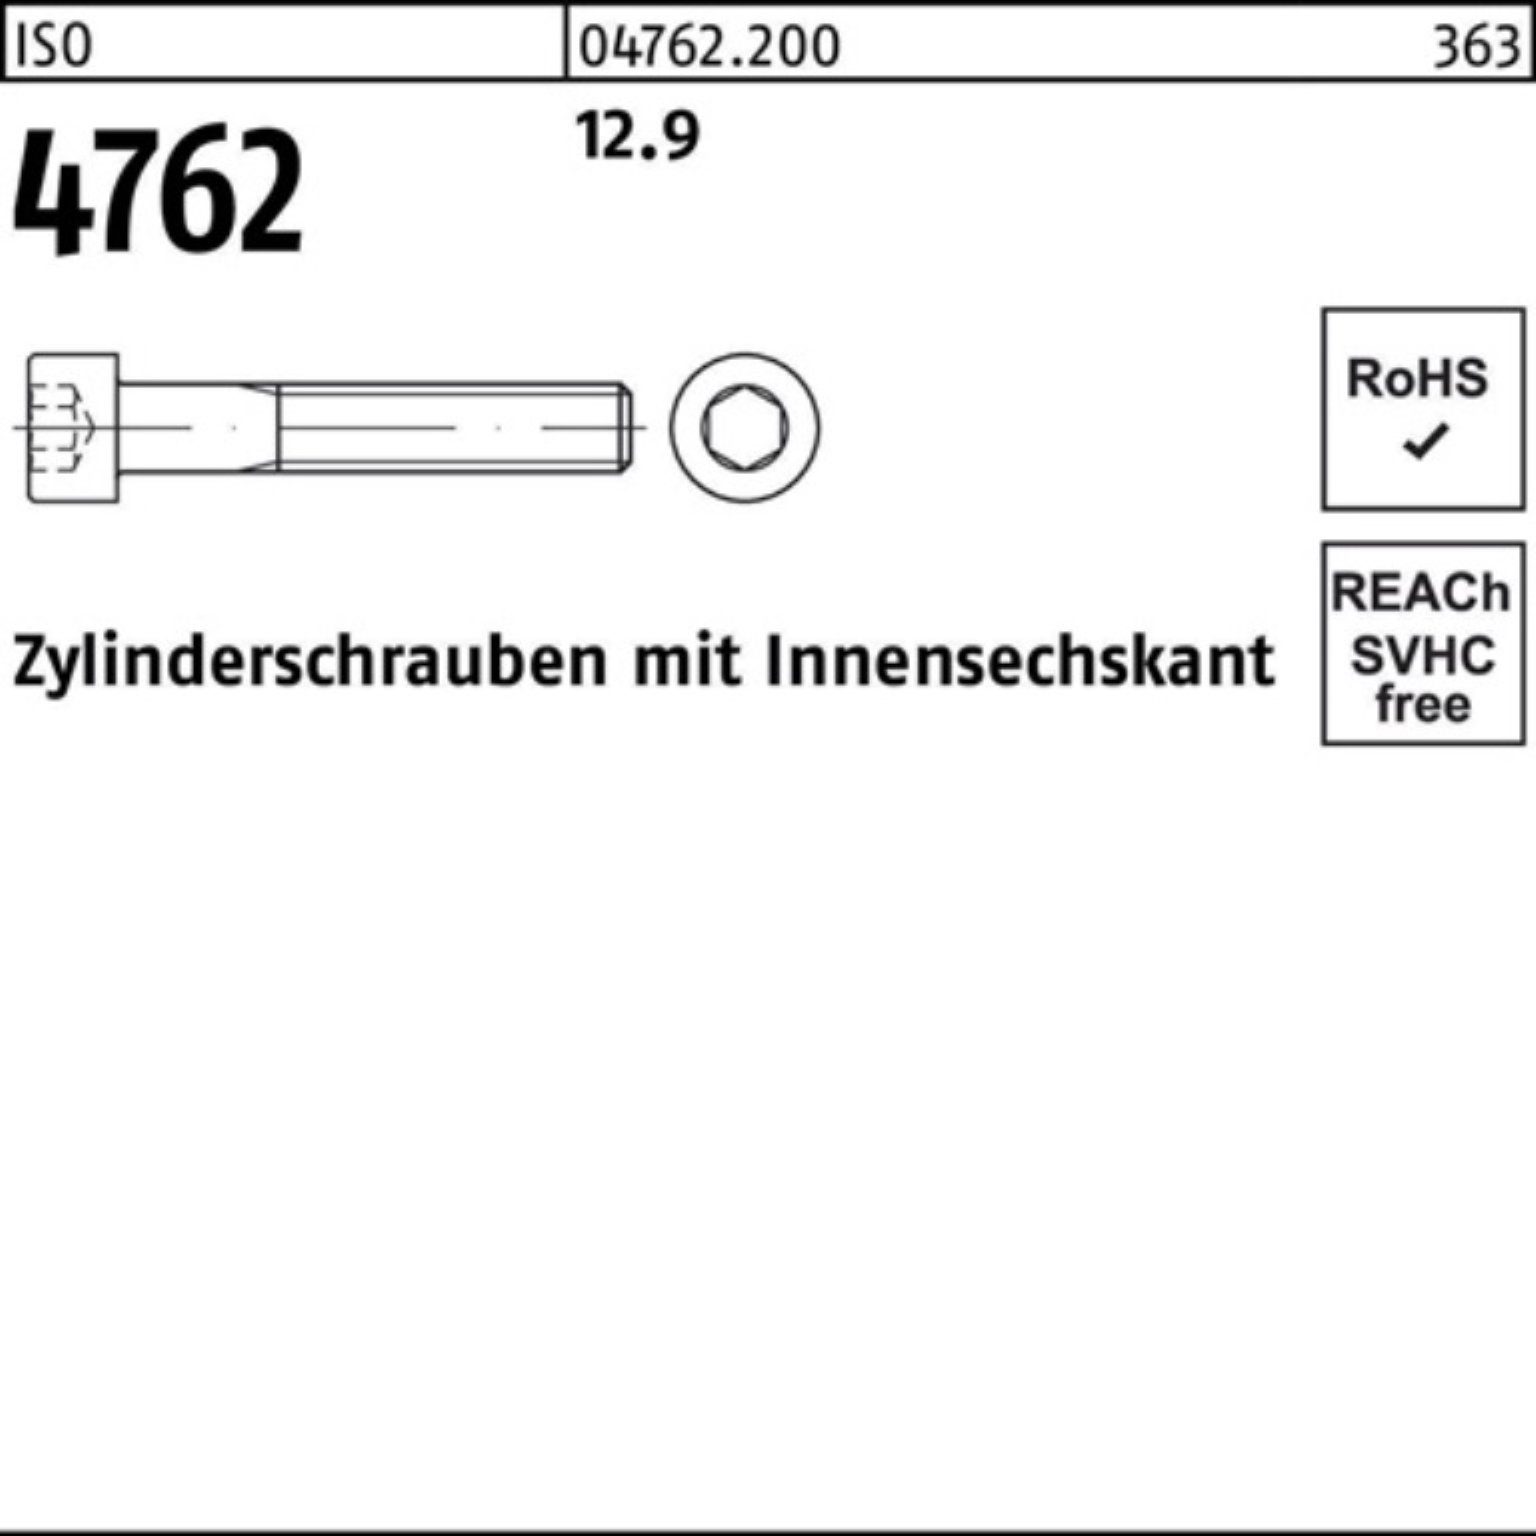 1 260 Pack 12.9 100er Innen-6kt Stück 4762 Zylinderschraube M33x Zylinderschraube Reyher ISO